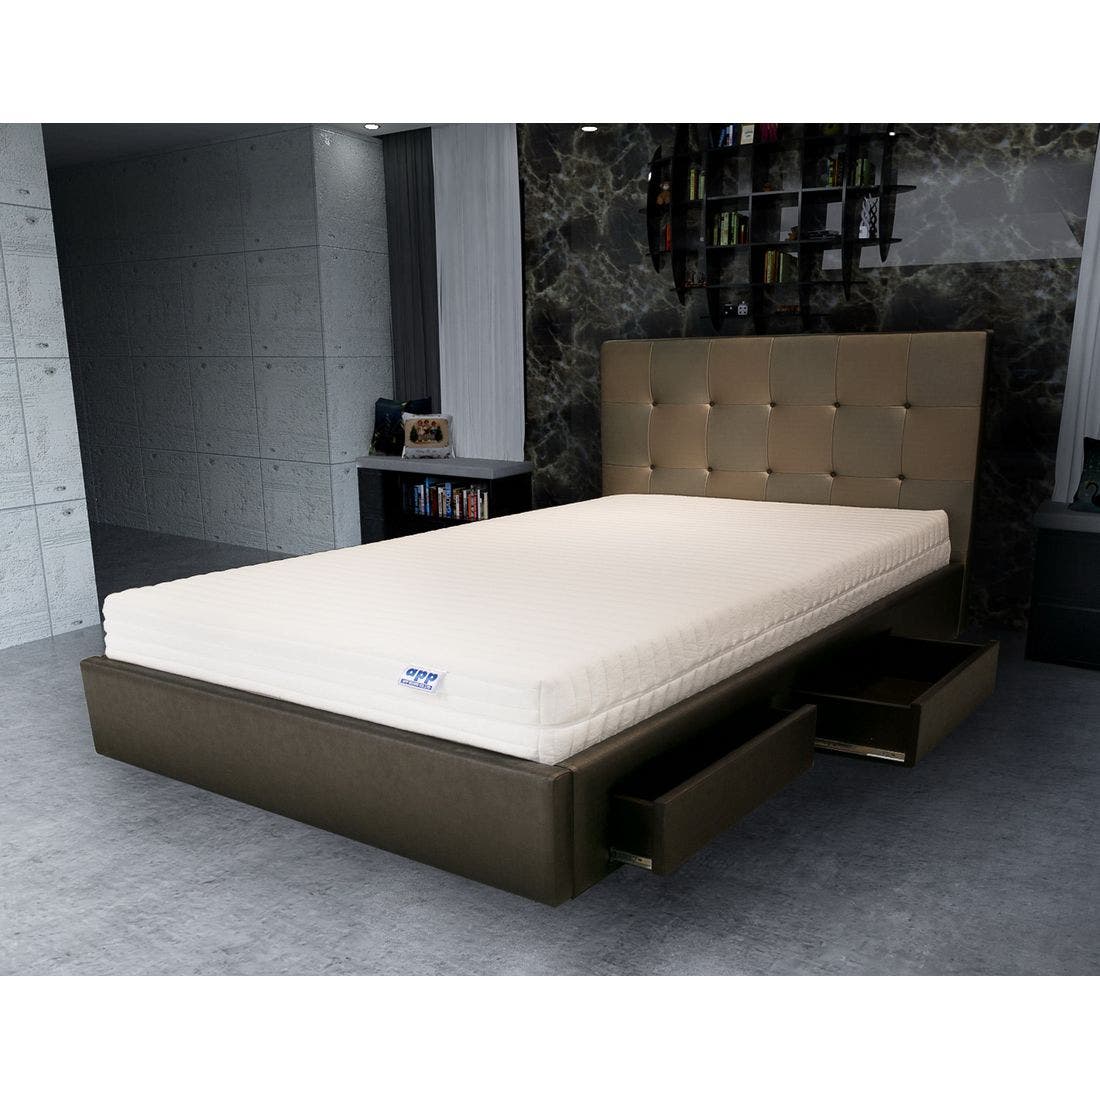 39001666-mattress-bedding-mattresses-latex-mattresses-31